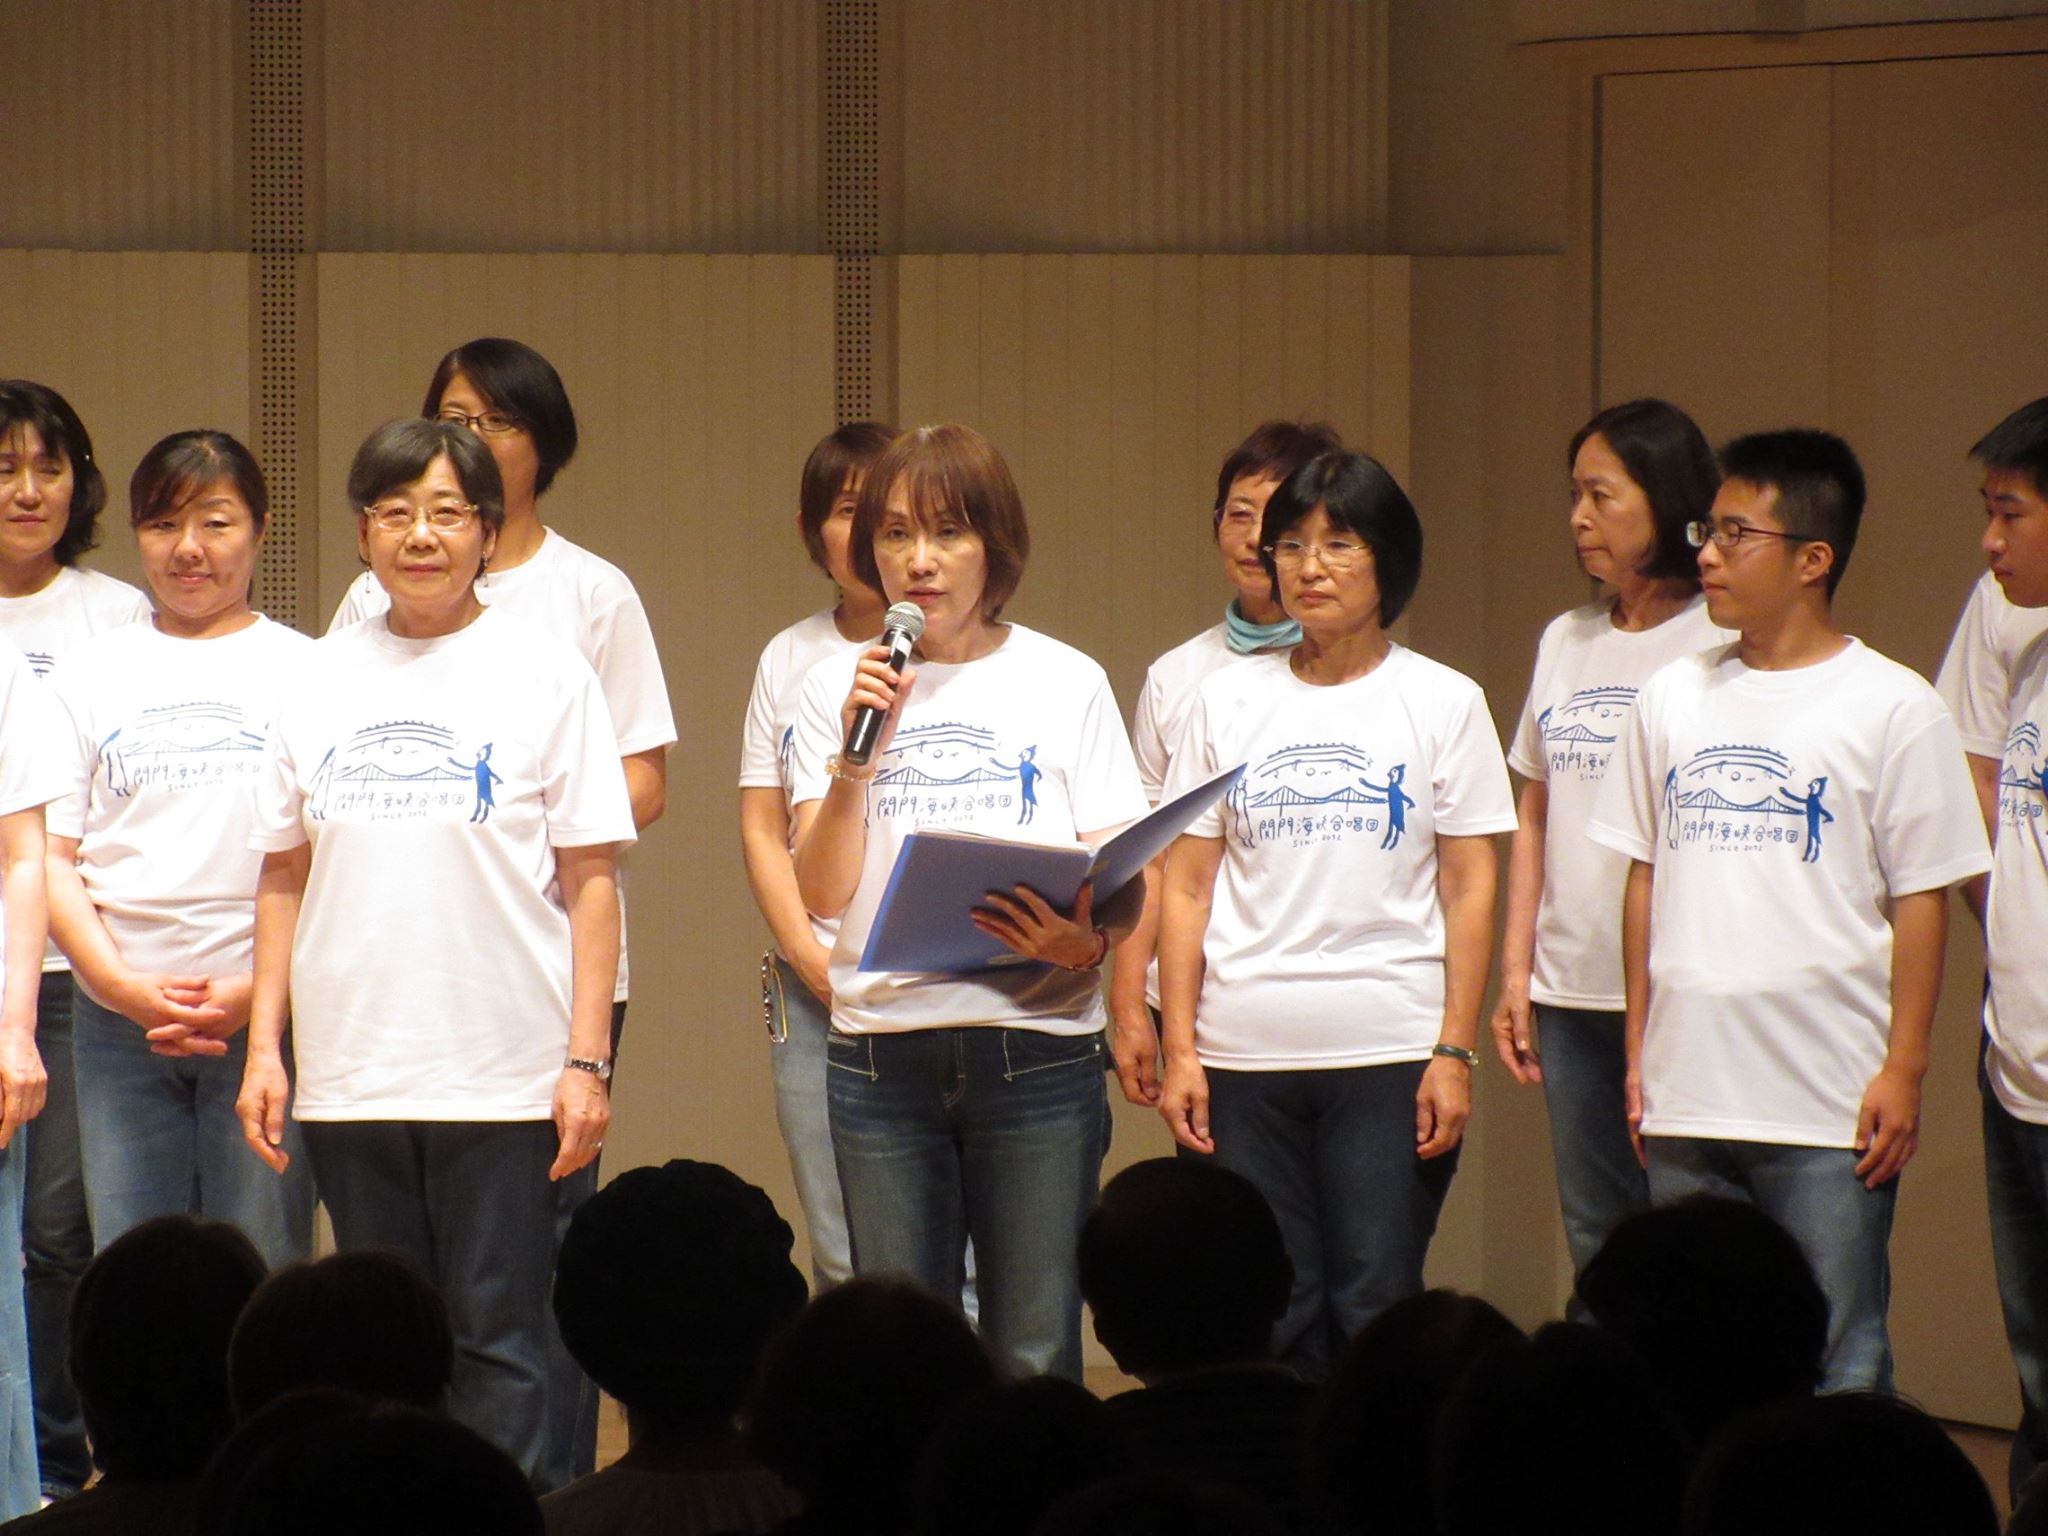 関門海峡合唱団メンバーによる力強い曲紹介